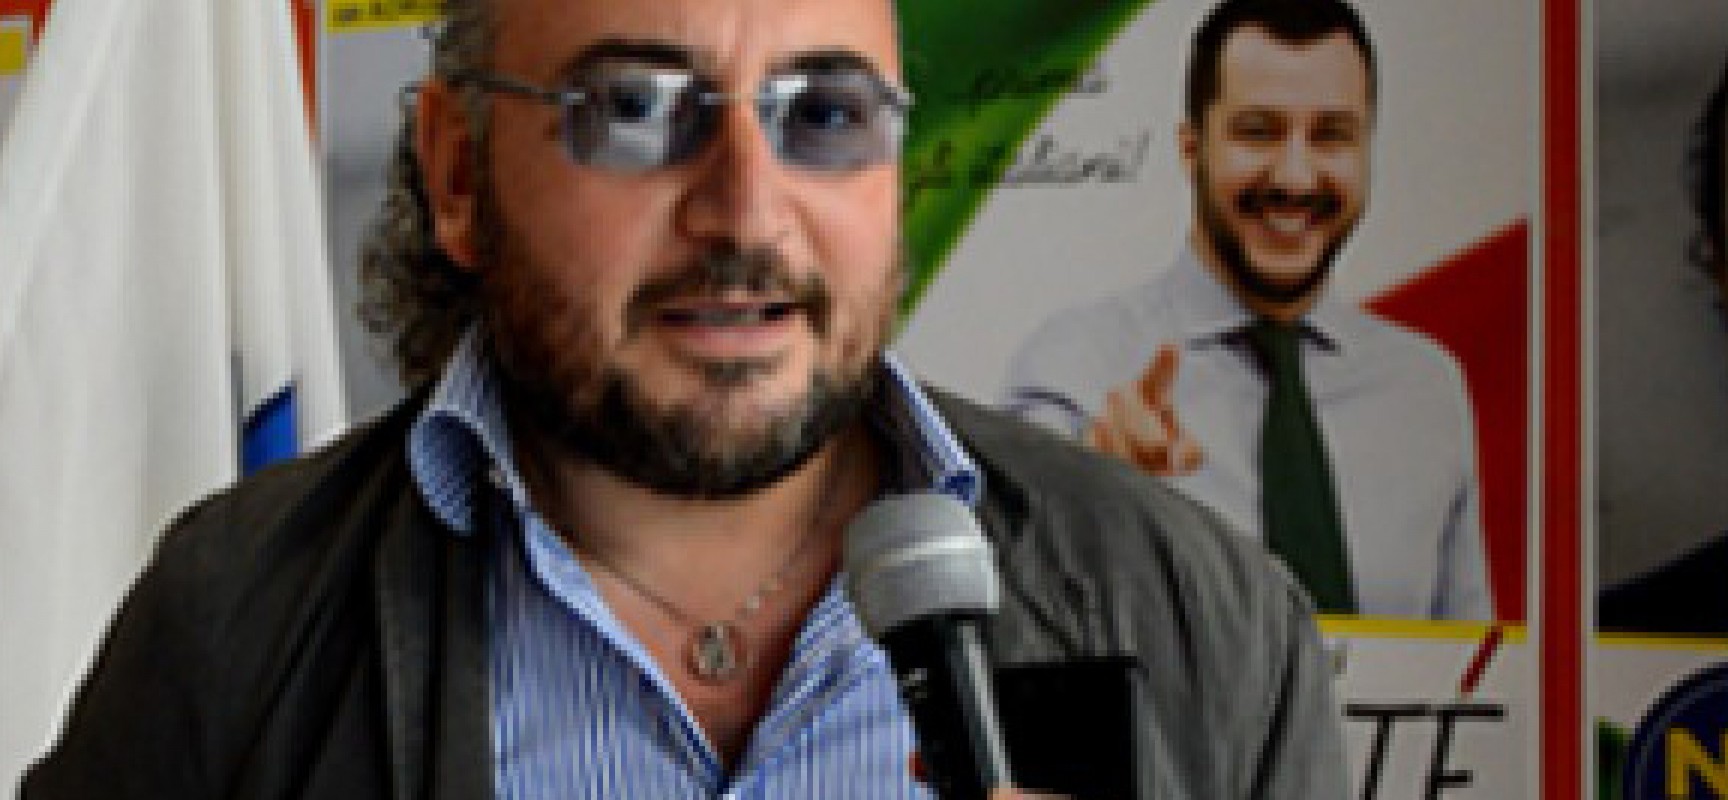 Rottura in Noi con Salvini, Prete disconosce il coordinatore regionale e scrive a Salvini